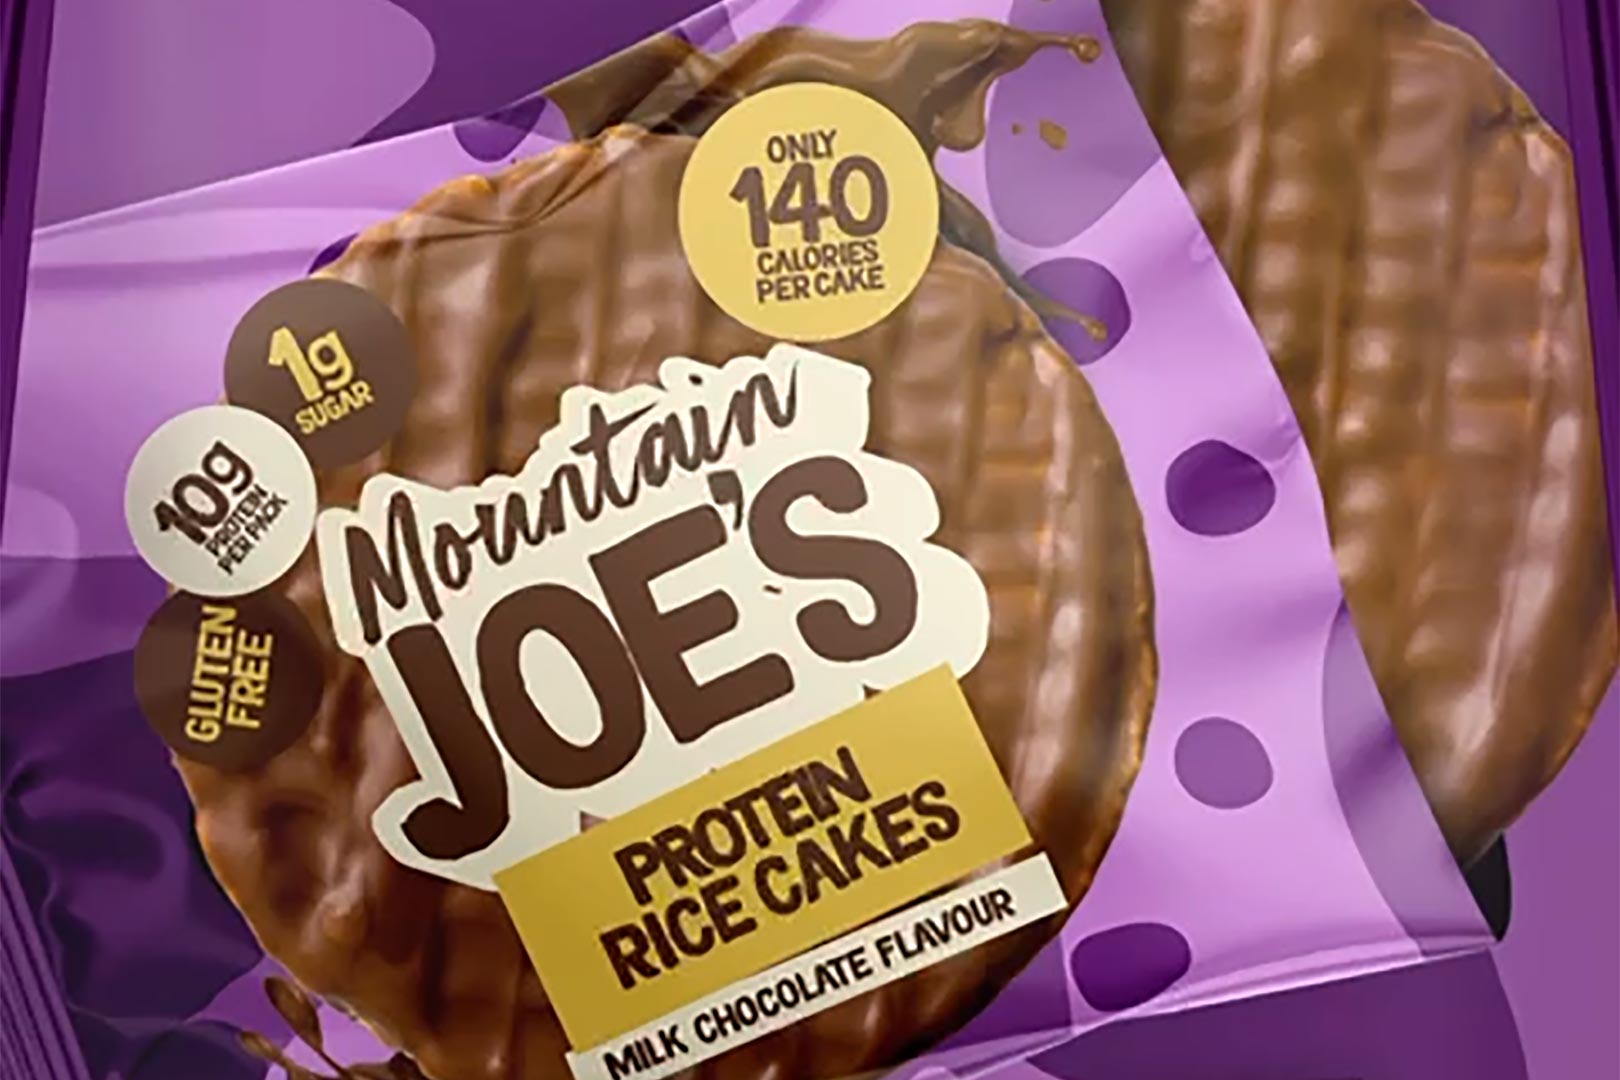 Mountain Joes Protein Rice Cakes